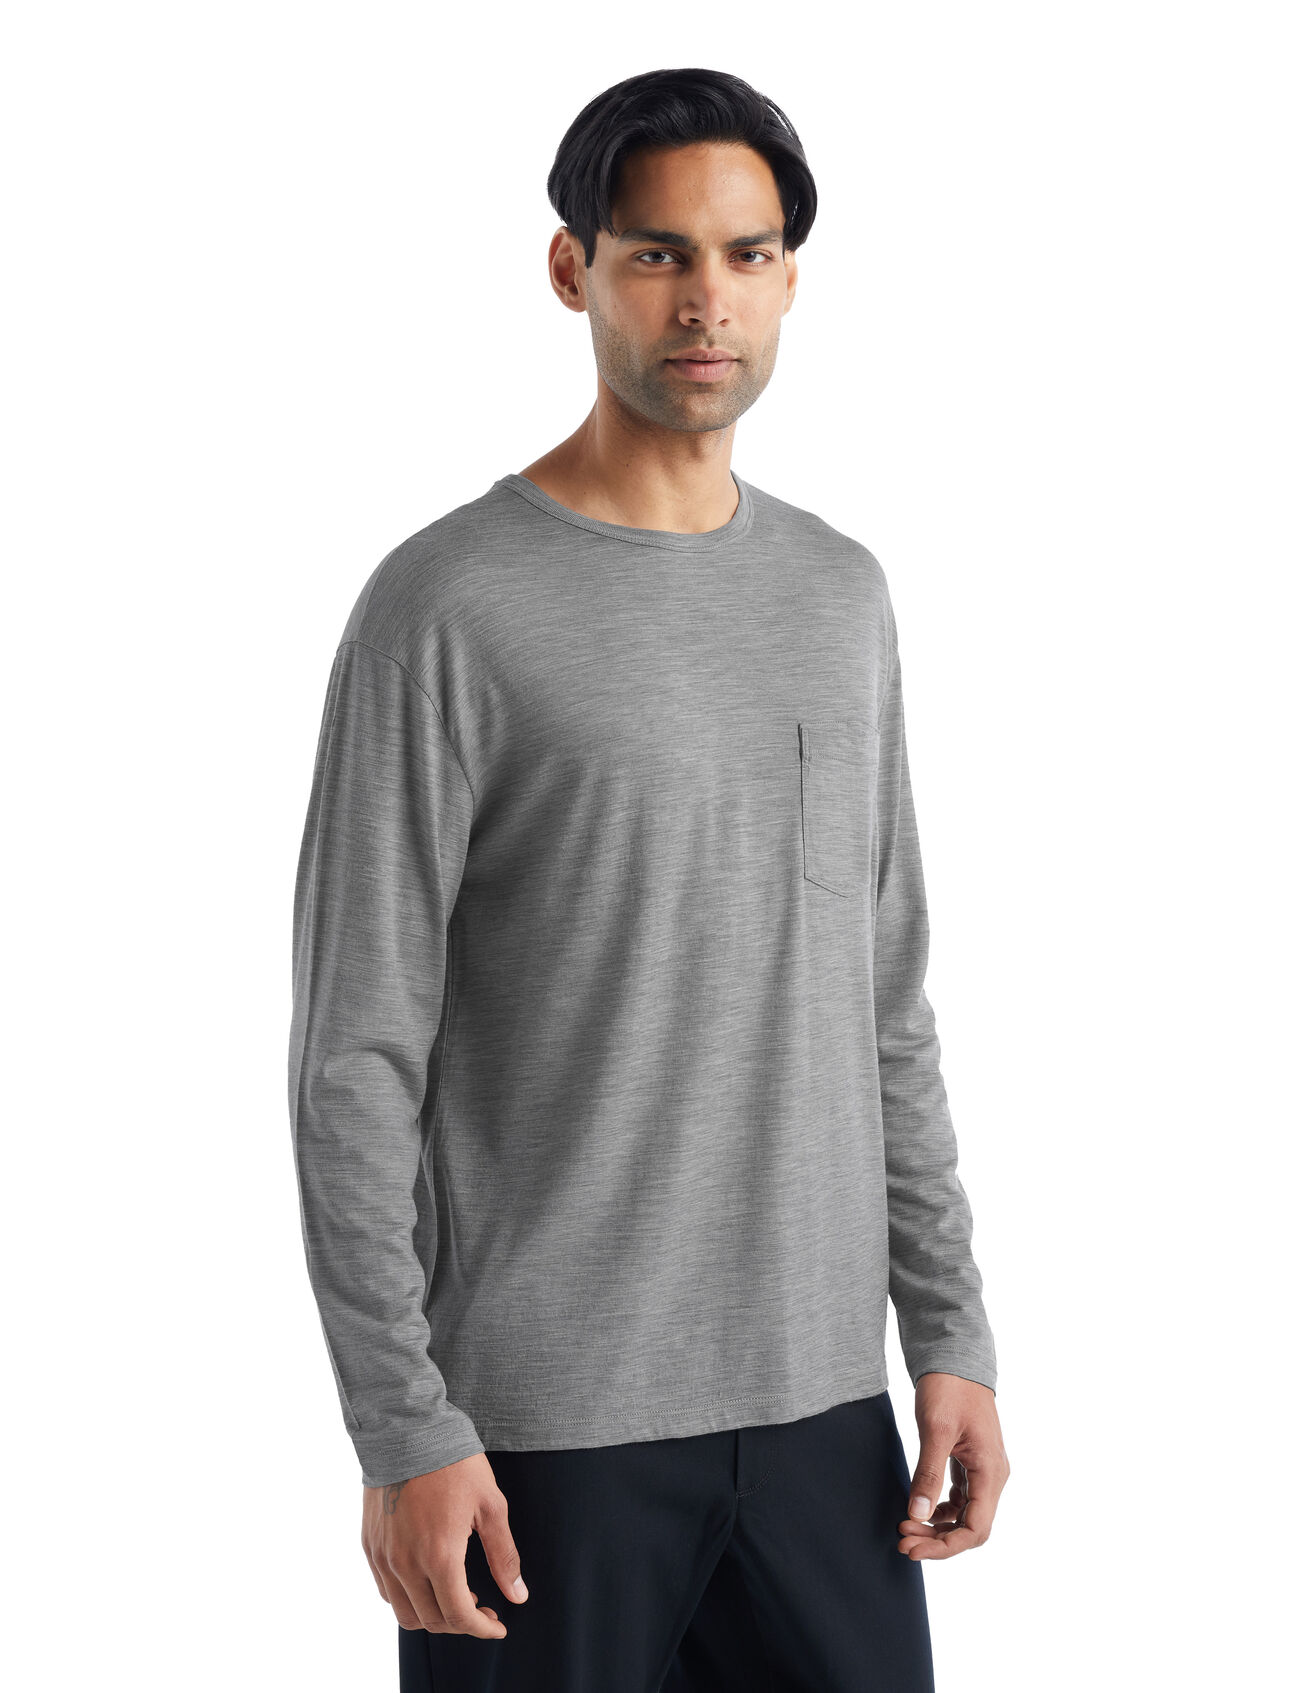 Merino Granary Langarmshirt mit Brusttasche Herren Ein klassisches Pocket T-Shirt mit legerer Passform, das Komfort mit Stil verbindet, das langärmlige Granary T-Shirt mit Brusttasche ist dank 100% Merinowolle weich und atmungsaktiv. 